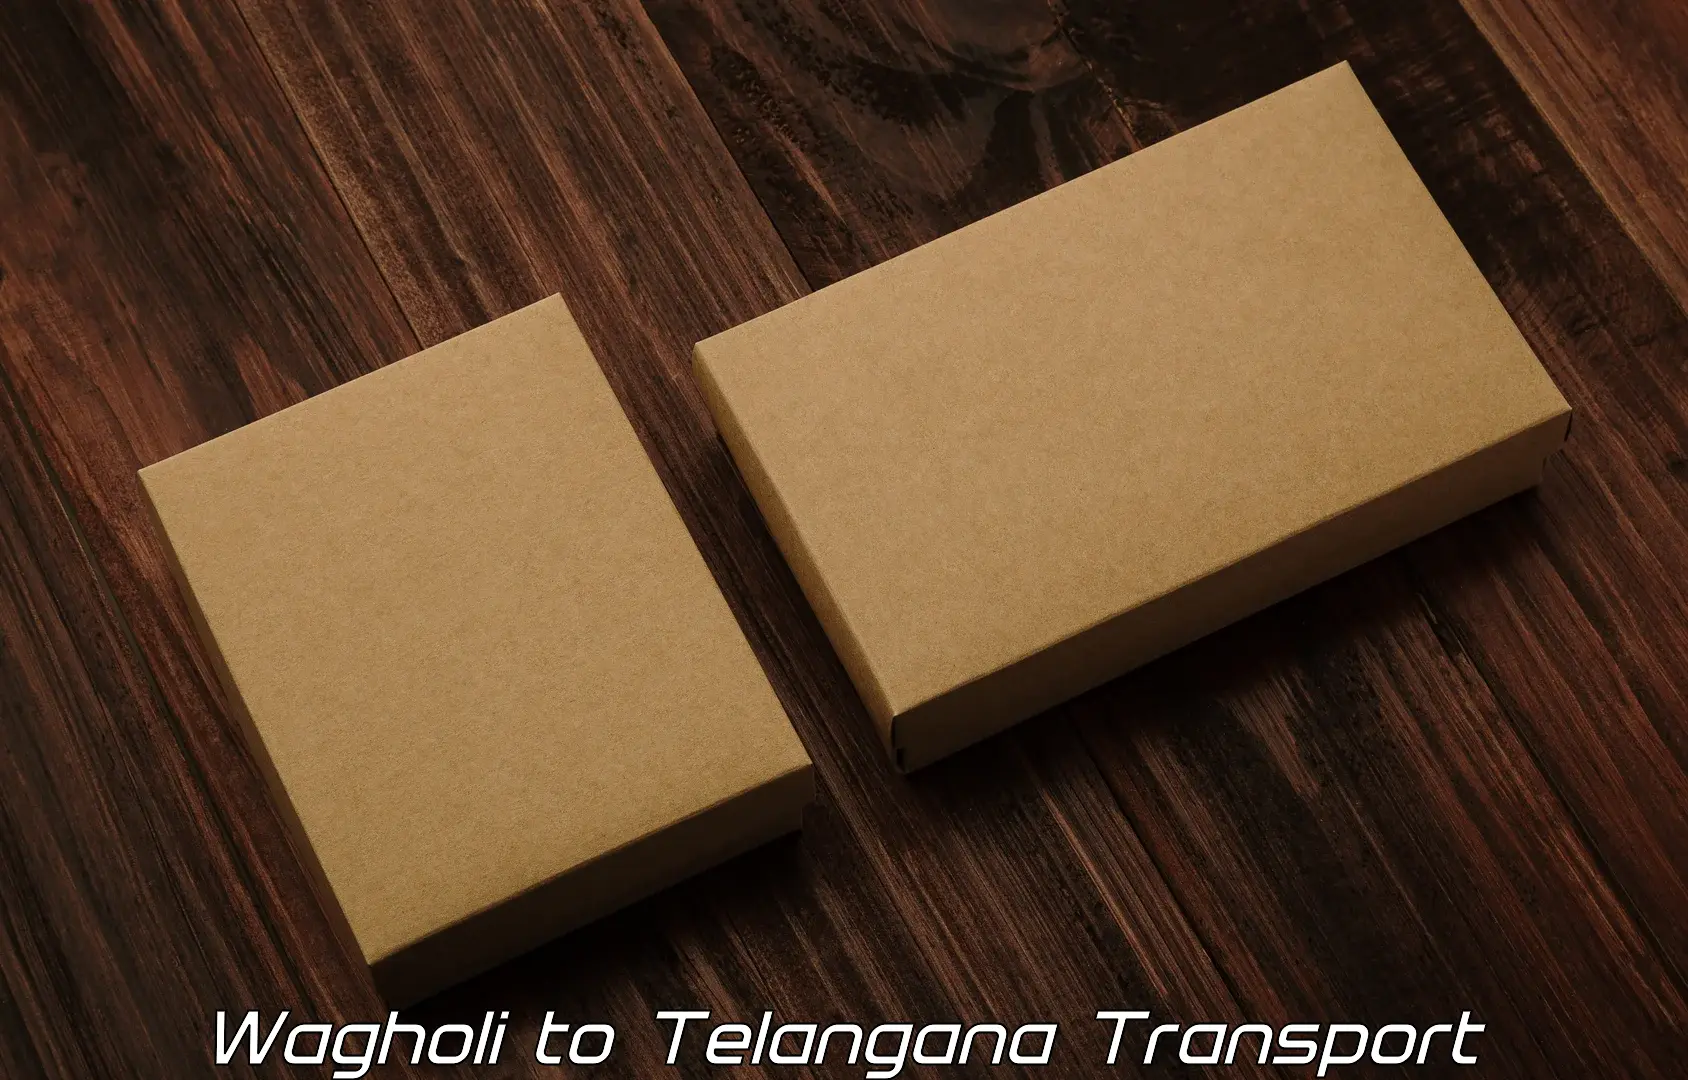 Daily parcel service transport in Wagholi to Manuguru